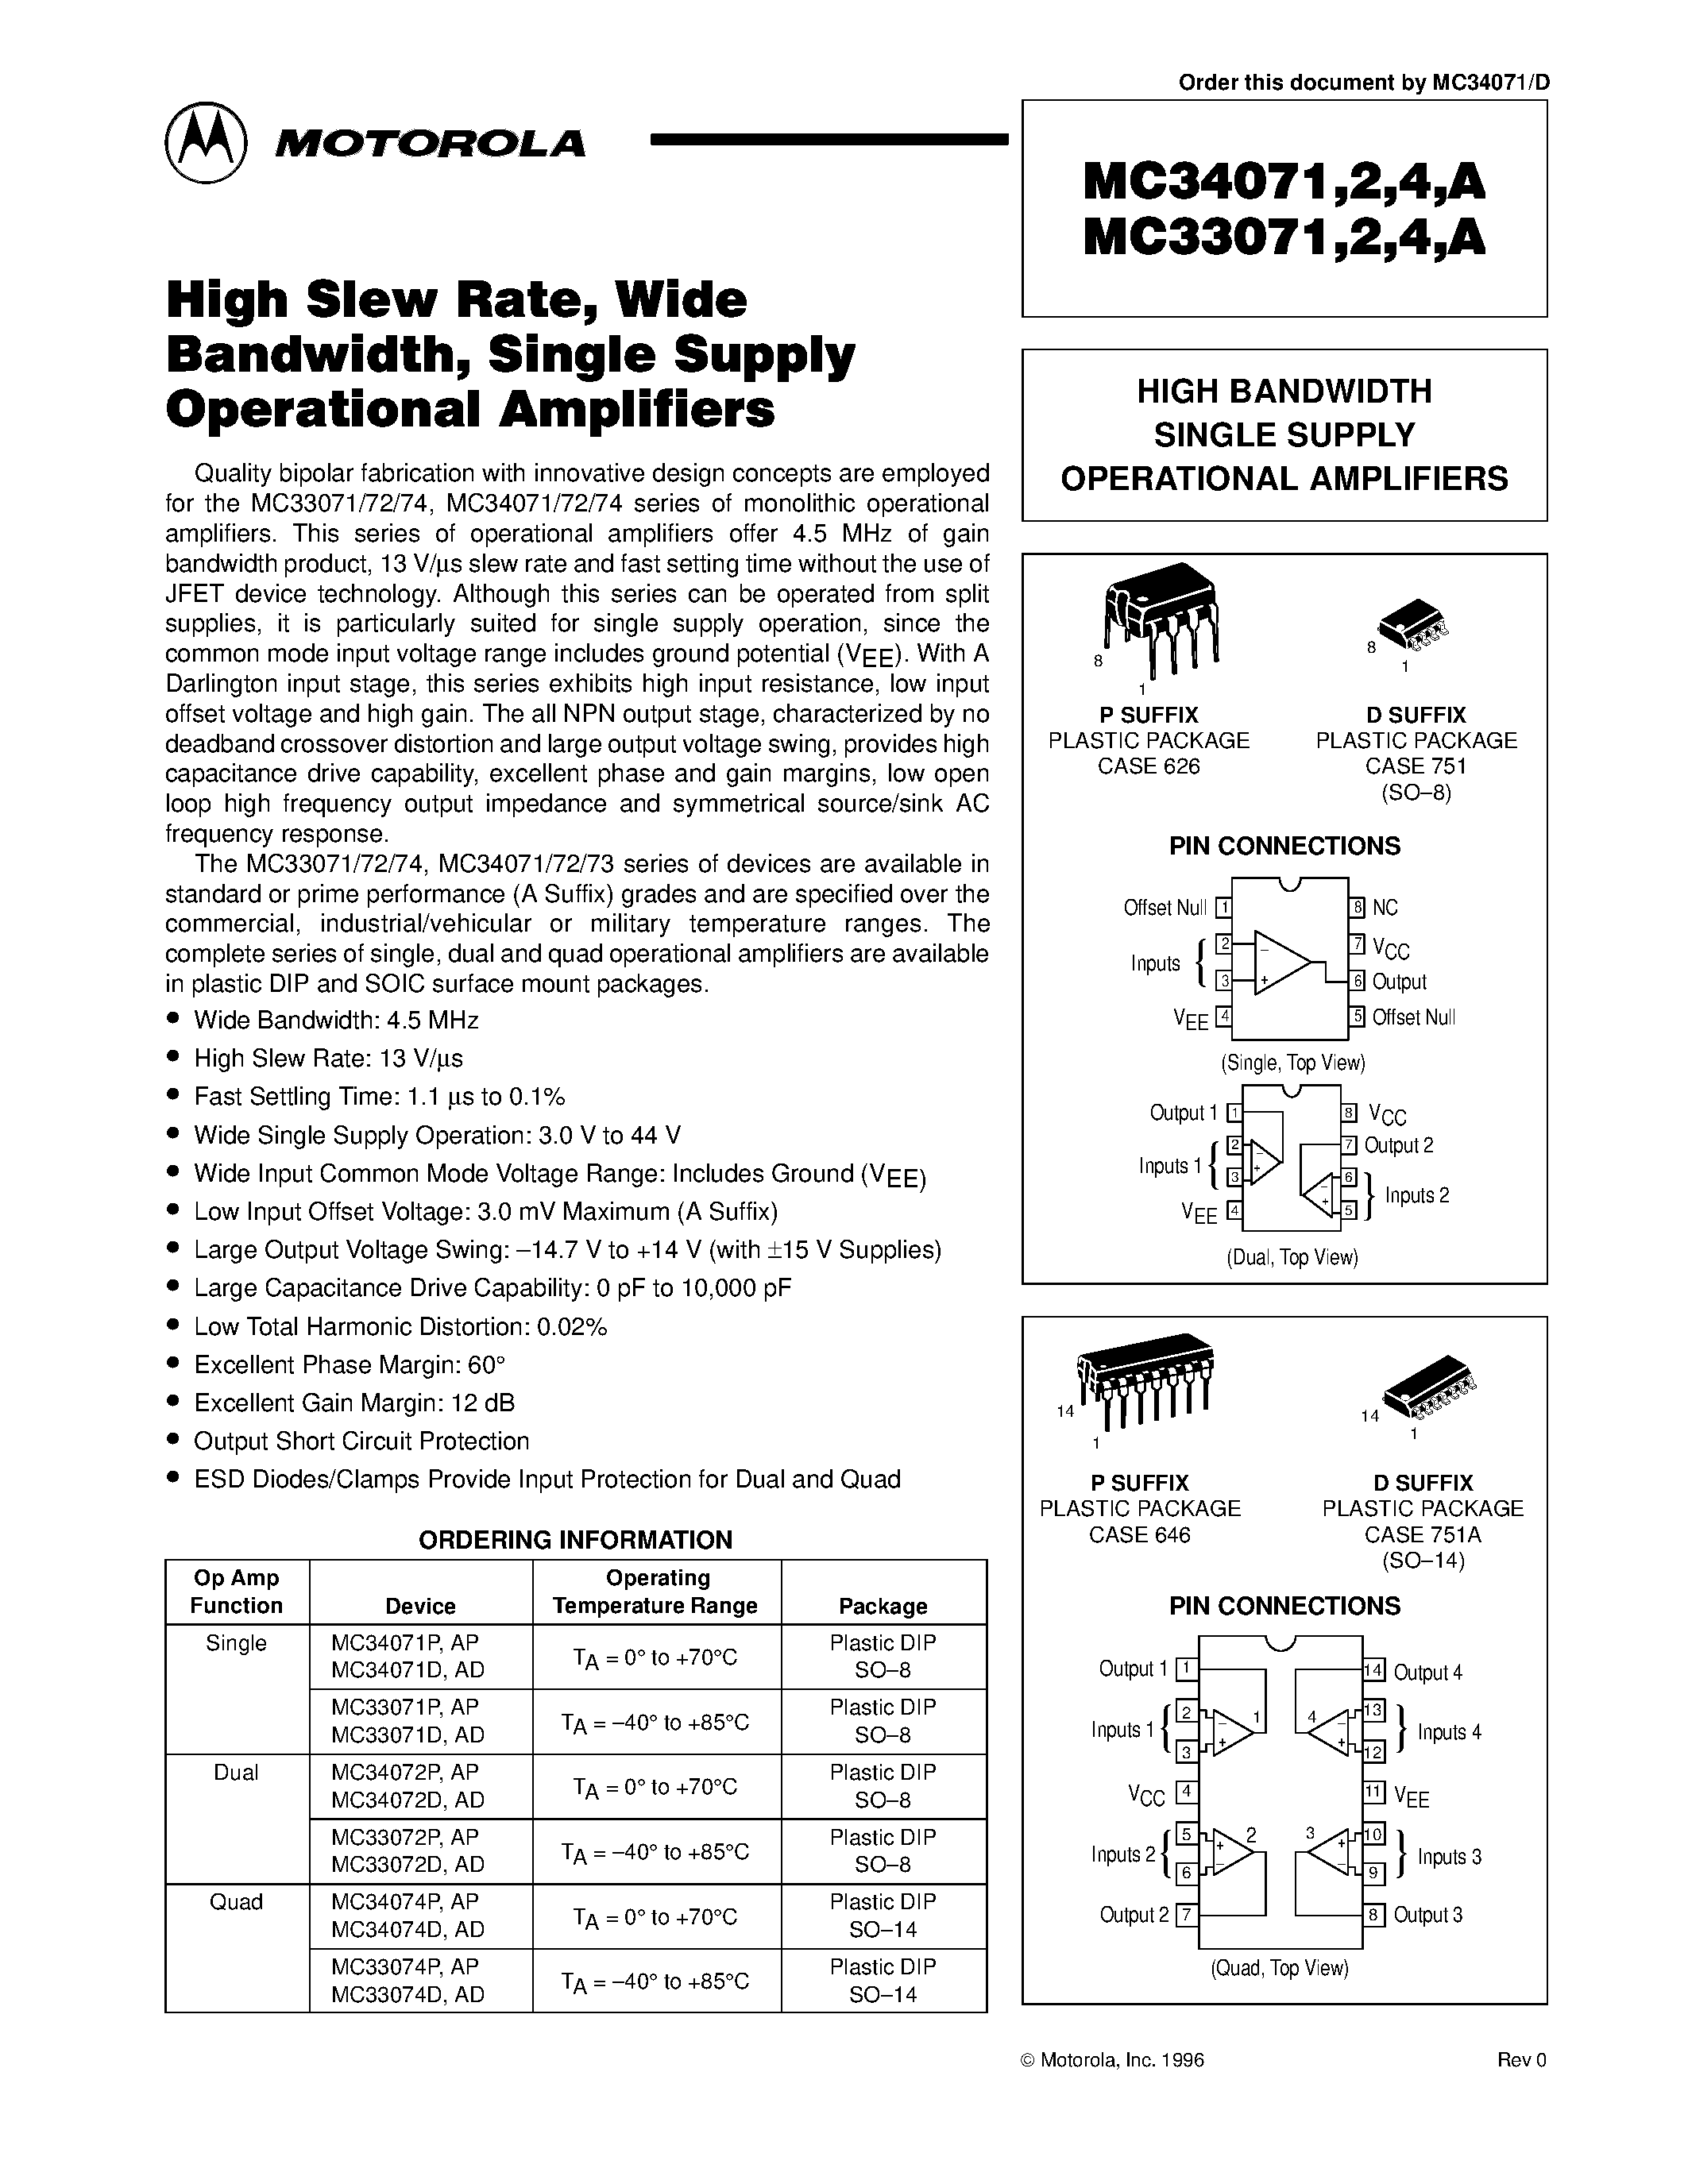 Datasheet MC33071 - (MC33071 / MC33072 / MC33074) HIGH BANDWIDTH SINGLE SUPPLY OPERATIONAL AMPLIFIERS page 1